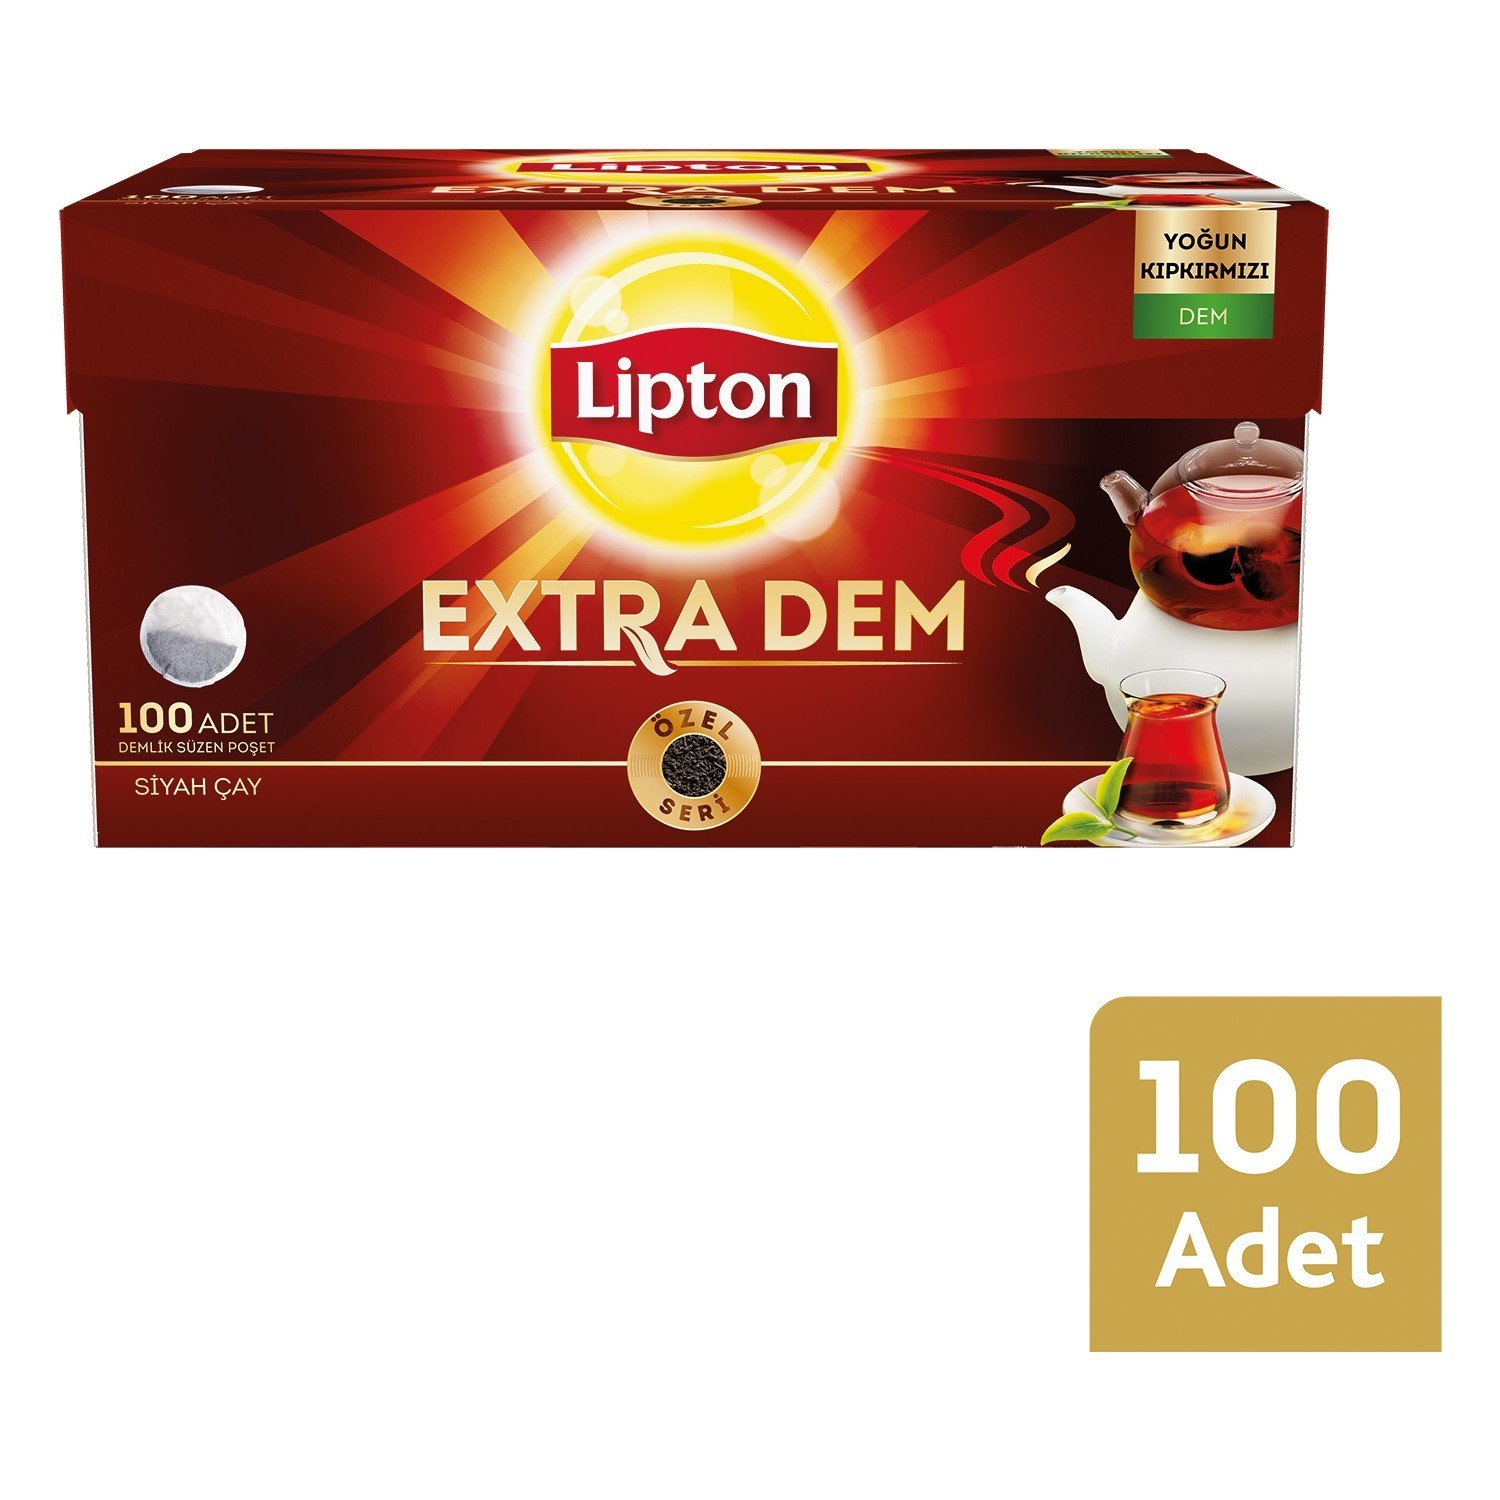 Lipton Extra Dem Demlik Poşet çay 100'lü